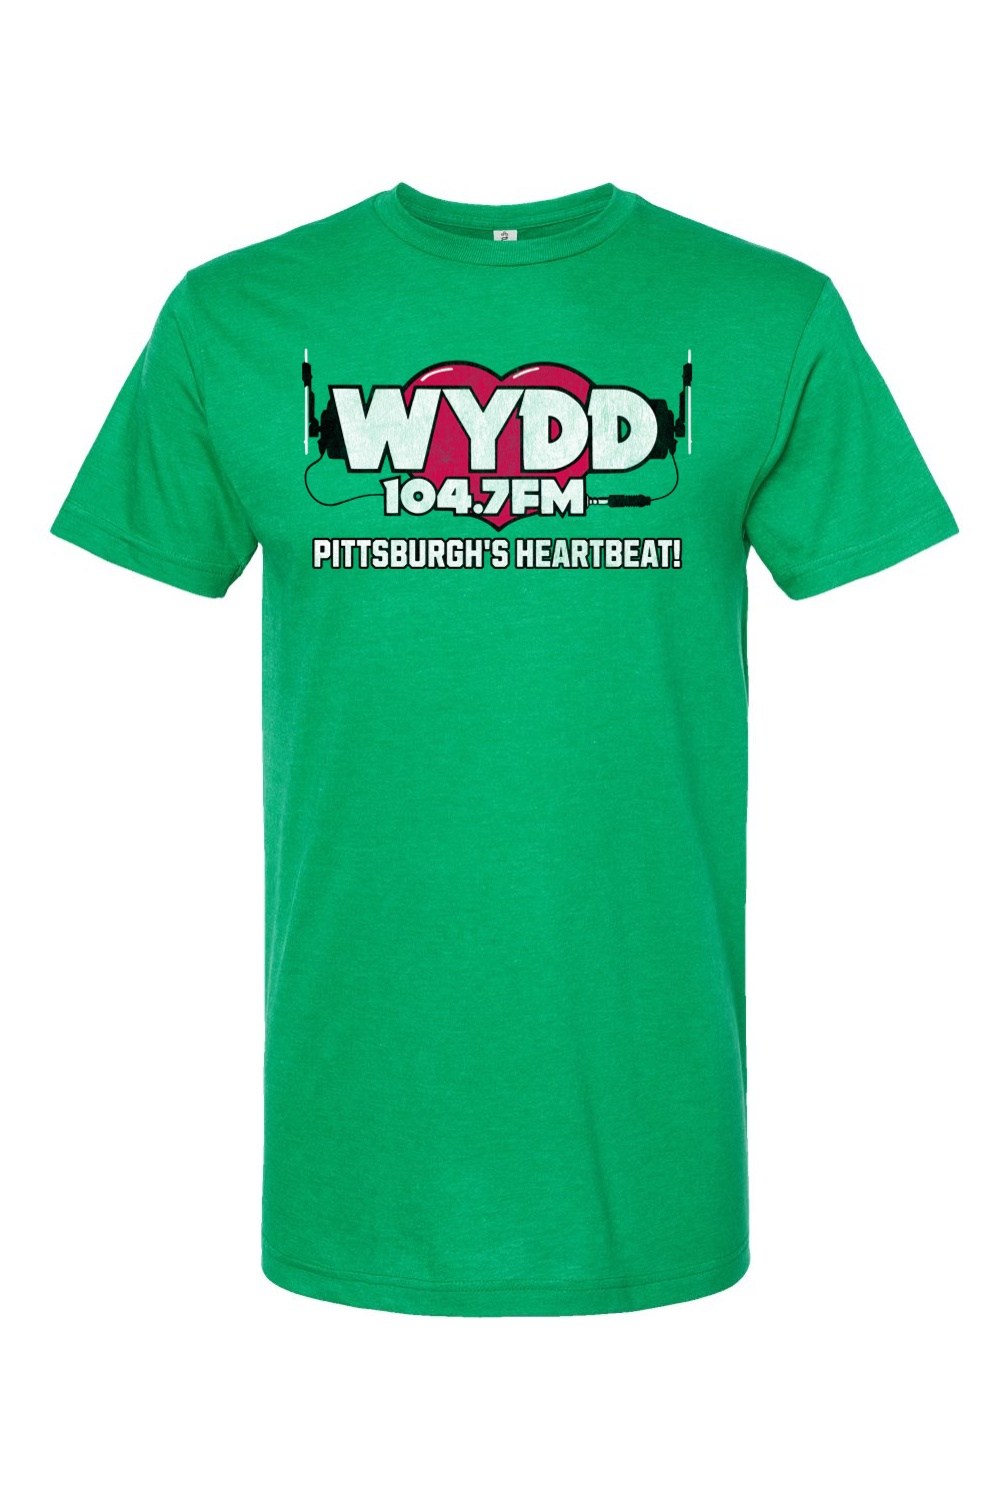 WYDD - 104.7 FM - Pittsburgh's Heartbeat - Yinzylvania